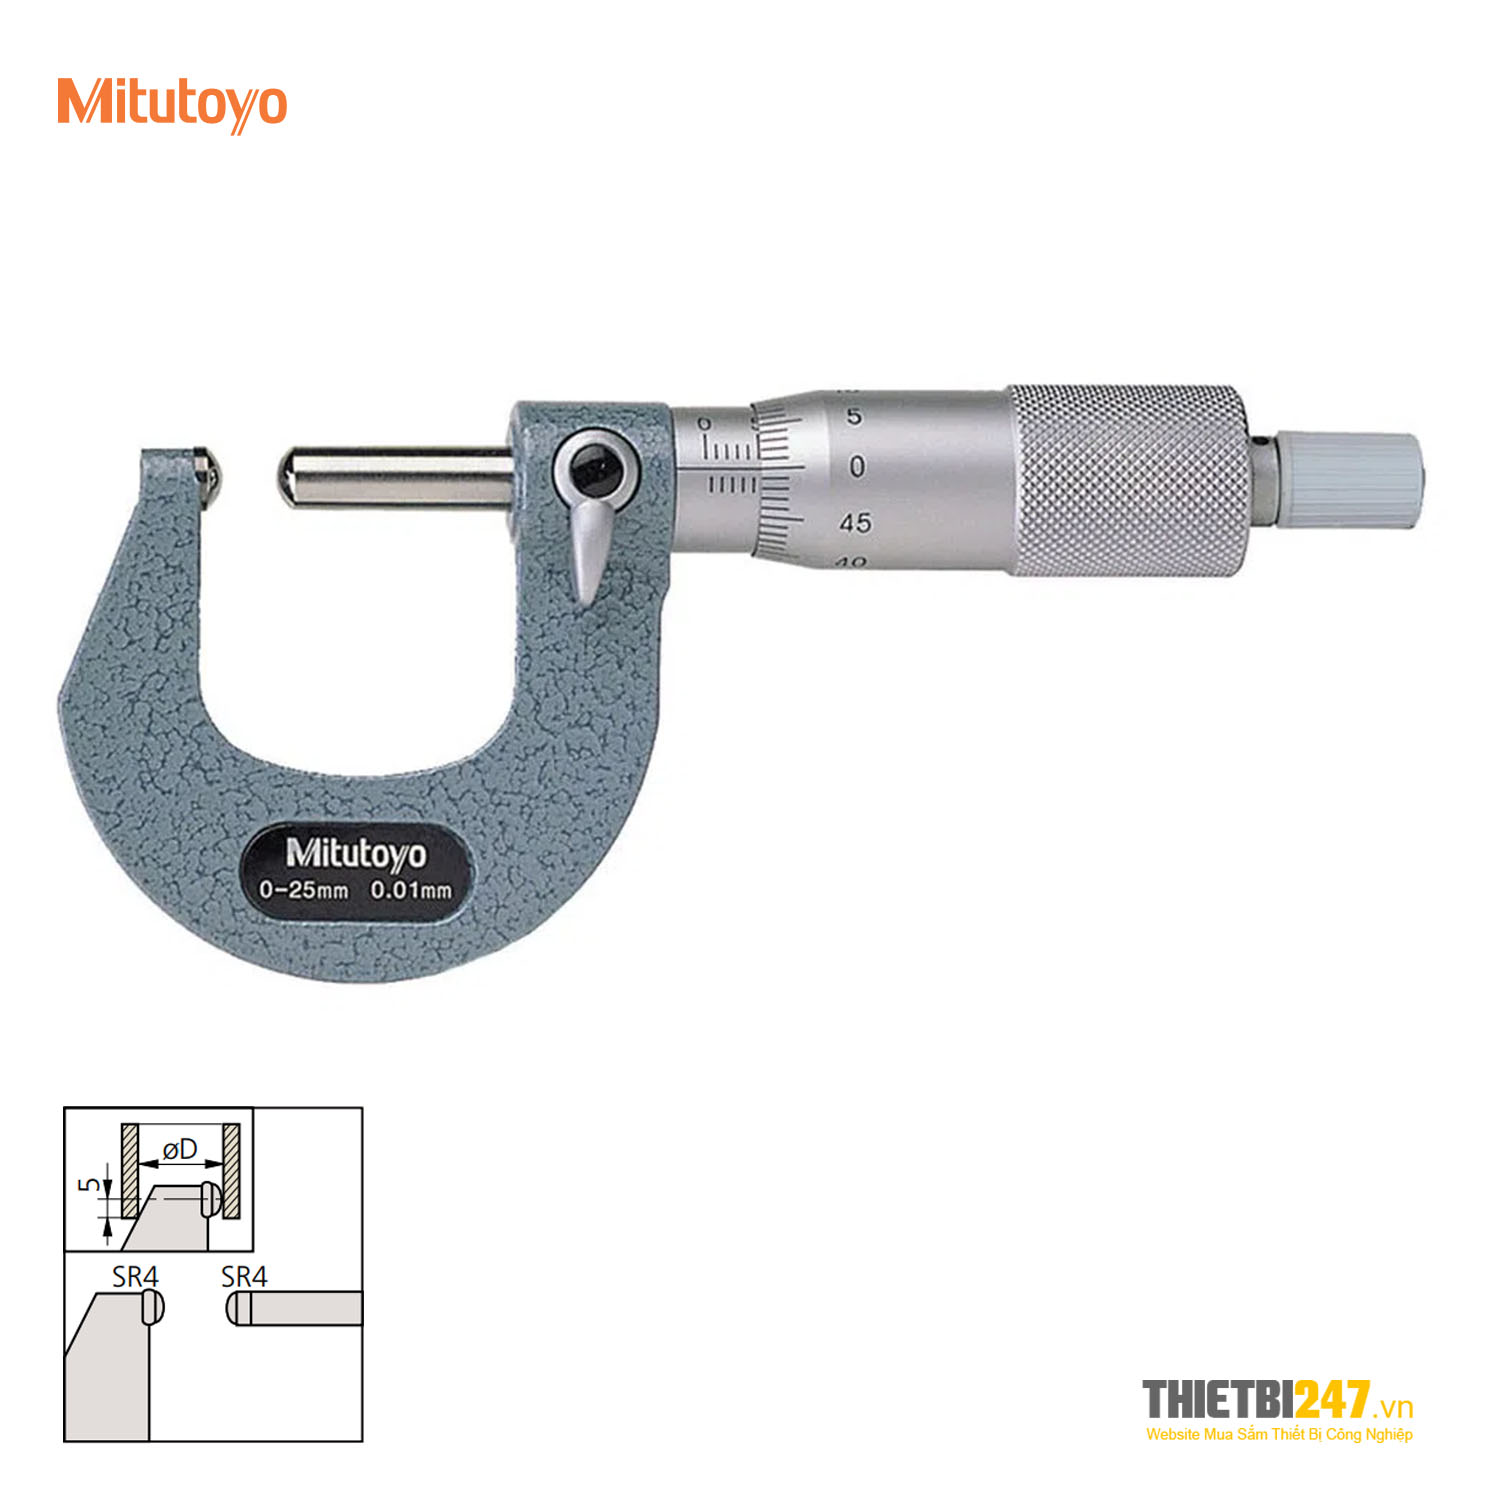 Panme cơ đo bề dày thành ống 0~25mm 0.01mm 2 đầu cầu 115-215 Mitutoyo